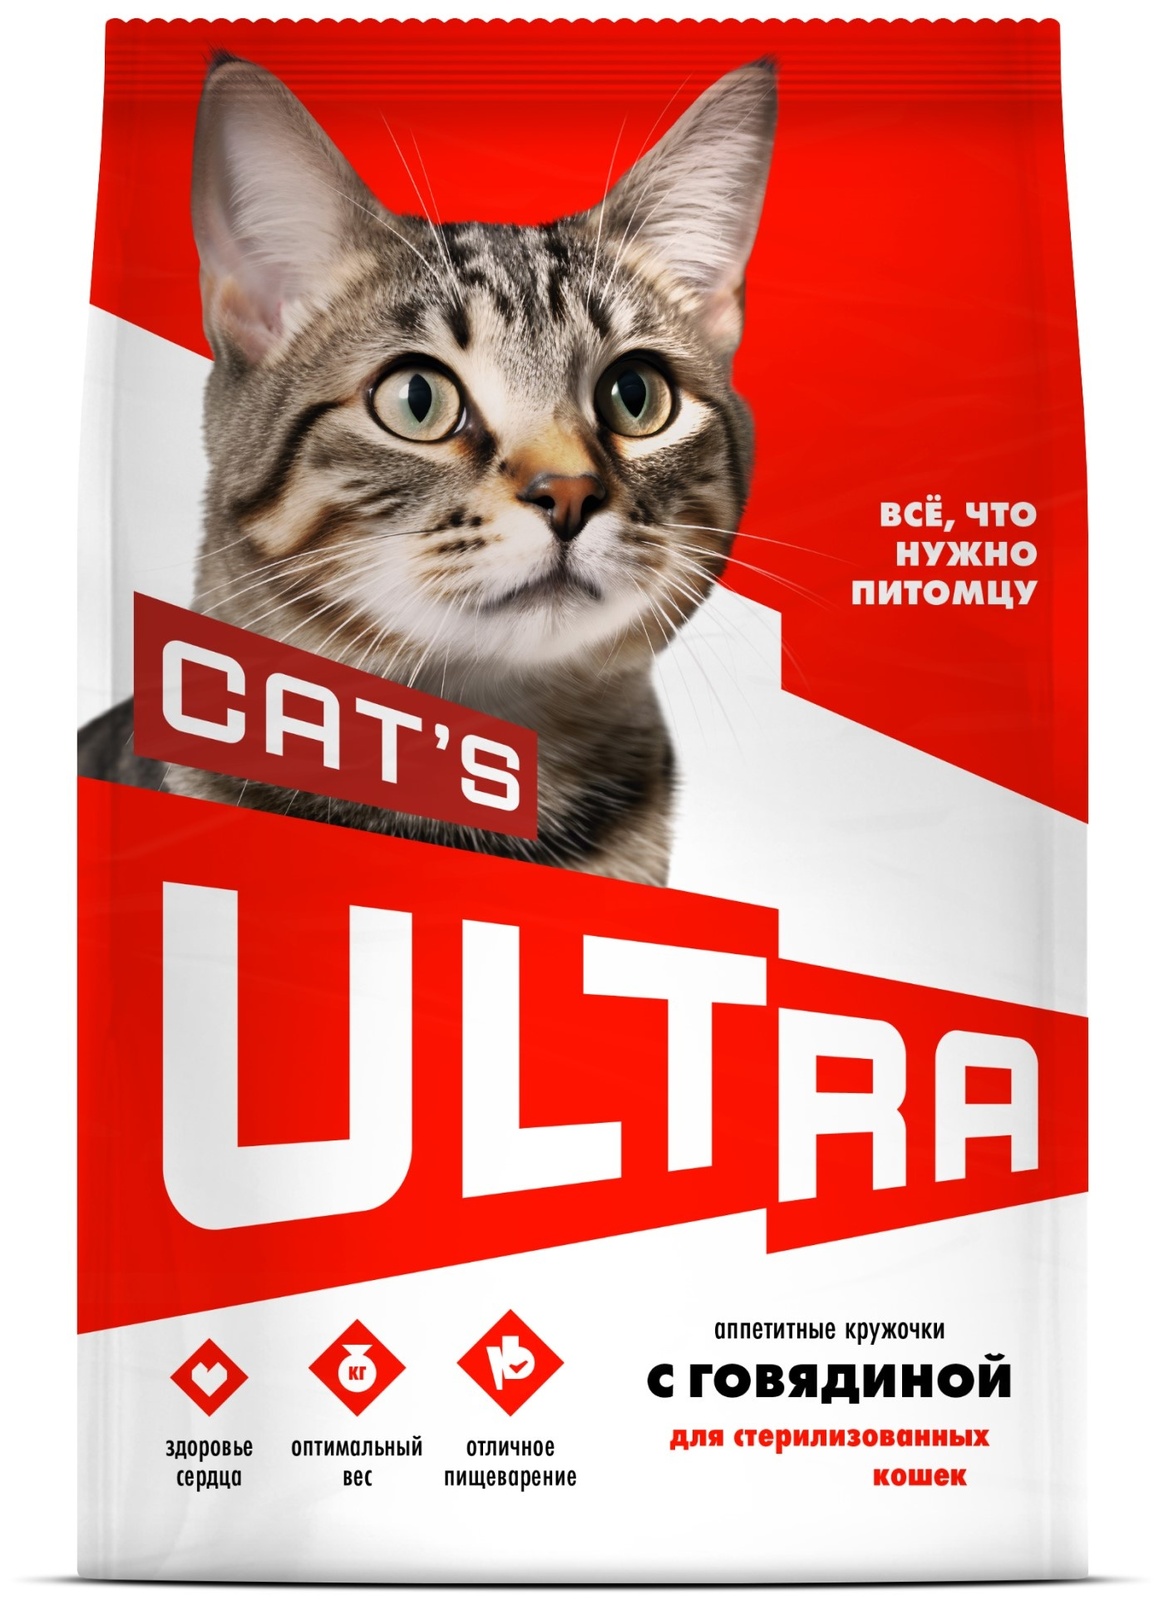 ULTRA ULTRA аппетитные кружочки с говядиной для стерилизованных кошек (1,5 кг) ultra ultra аппетитные кружочки 3 вида мяса для взрослых собак всех пород 12 кг